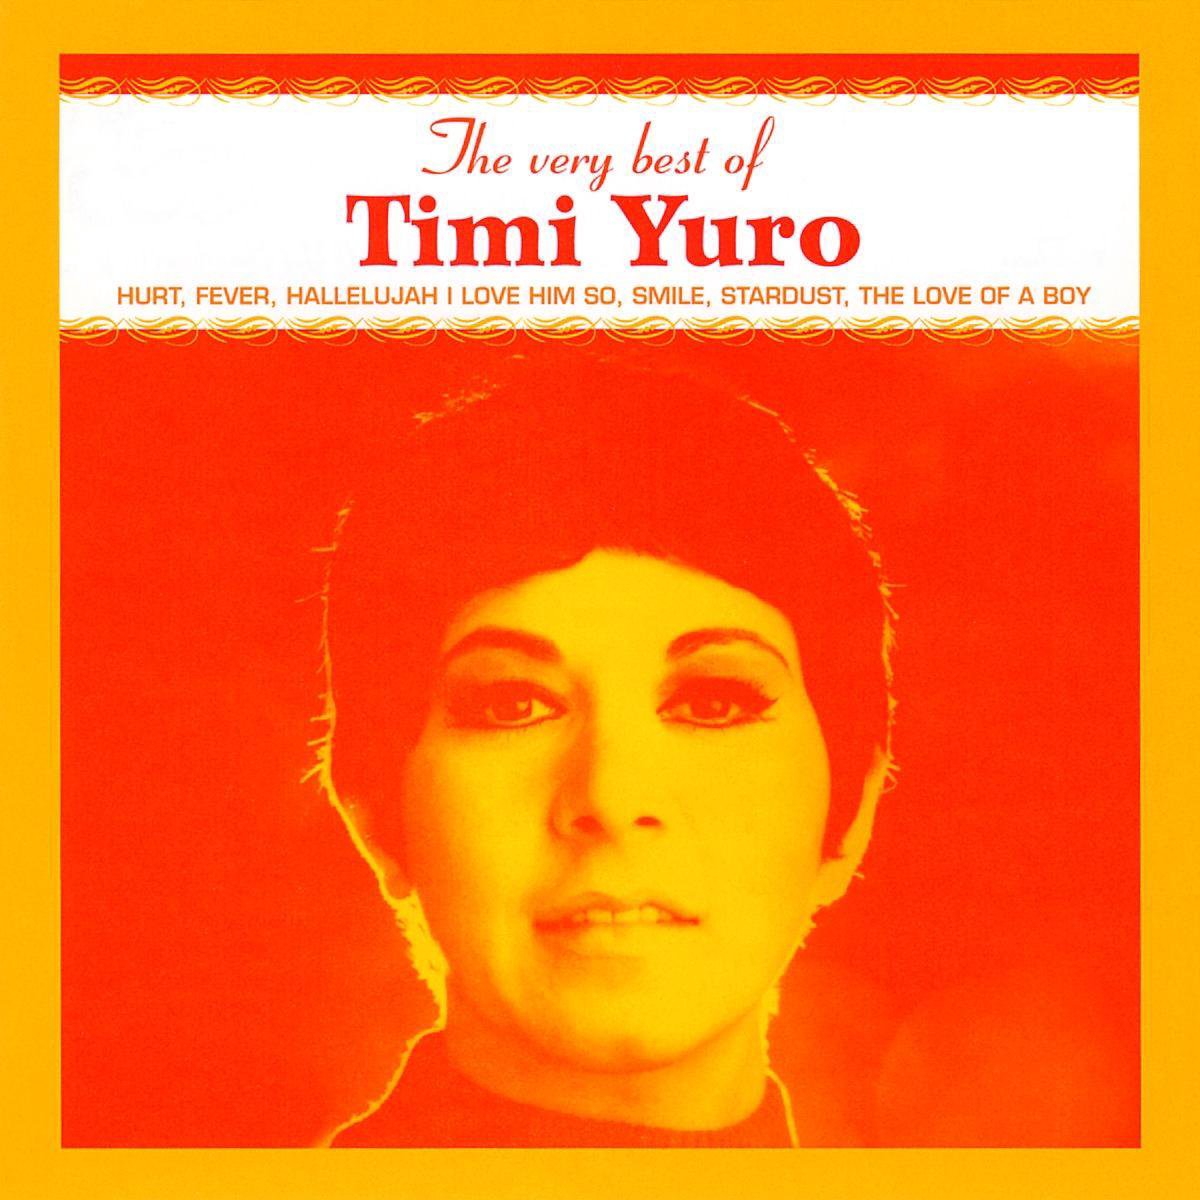 timi yuro songs list